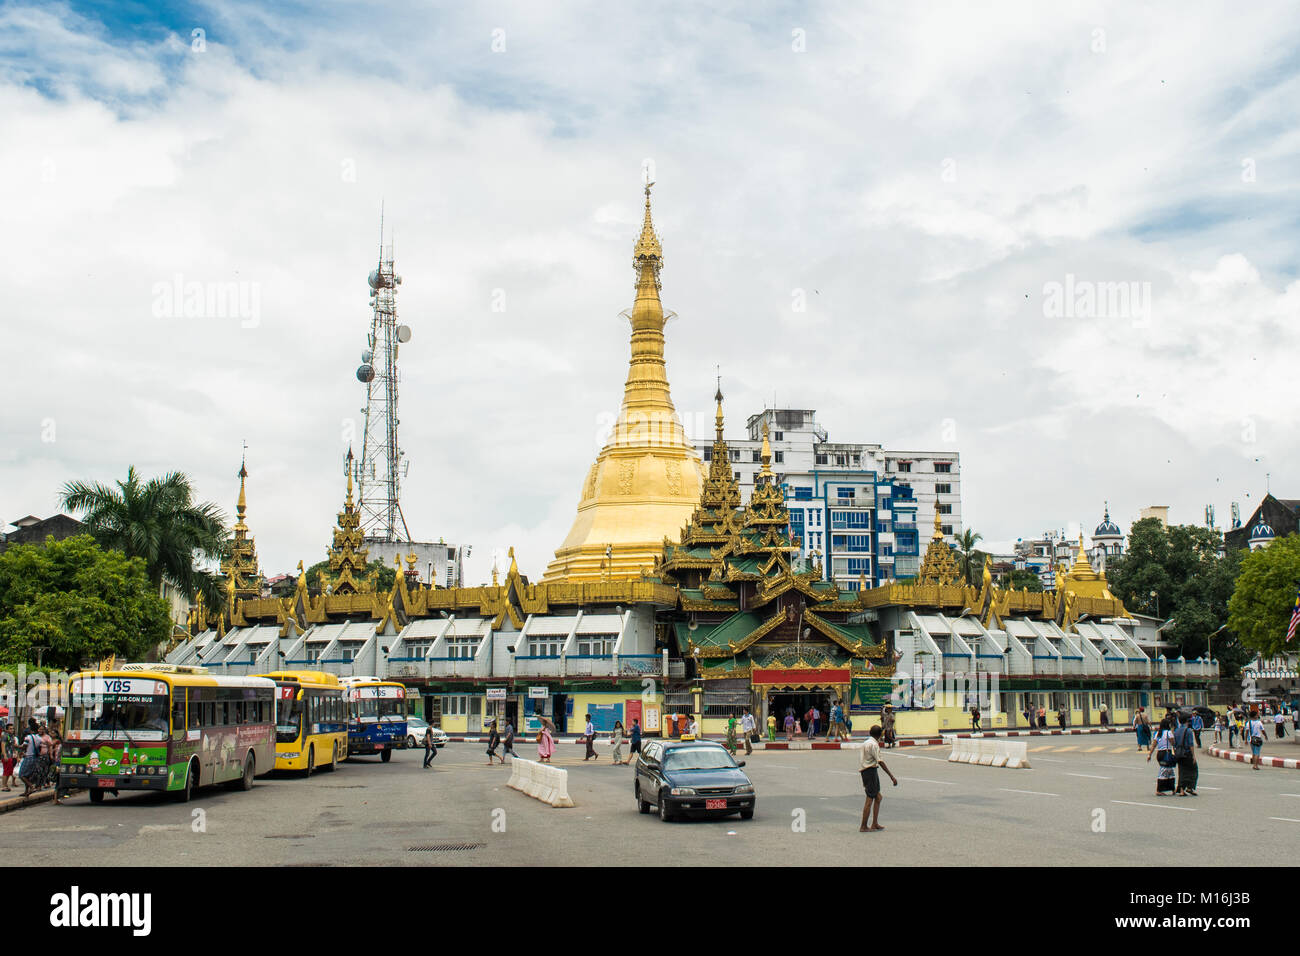 L'extérieur de la pagode Sule et stupa doré, à un carrefour et utilisé comme un îlot rond-point terminus d'autobus au centre-ville de Yangon, Myanmar Birmanie Asie Banque D'Images